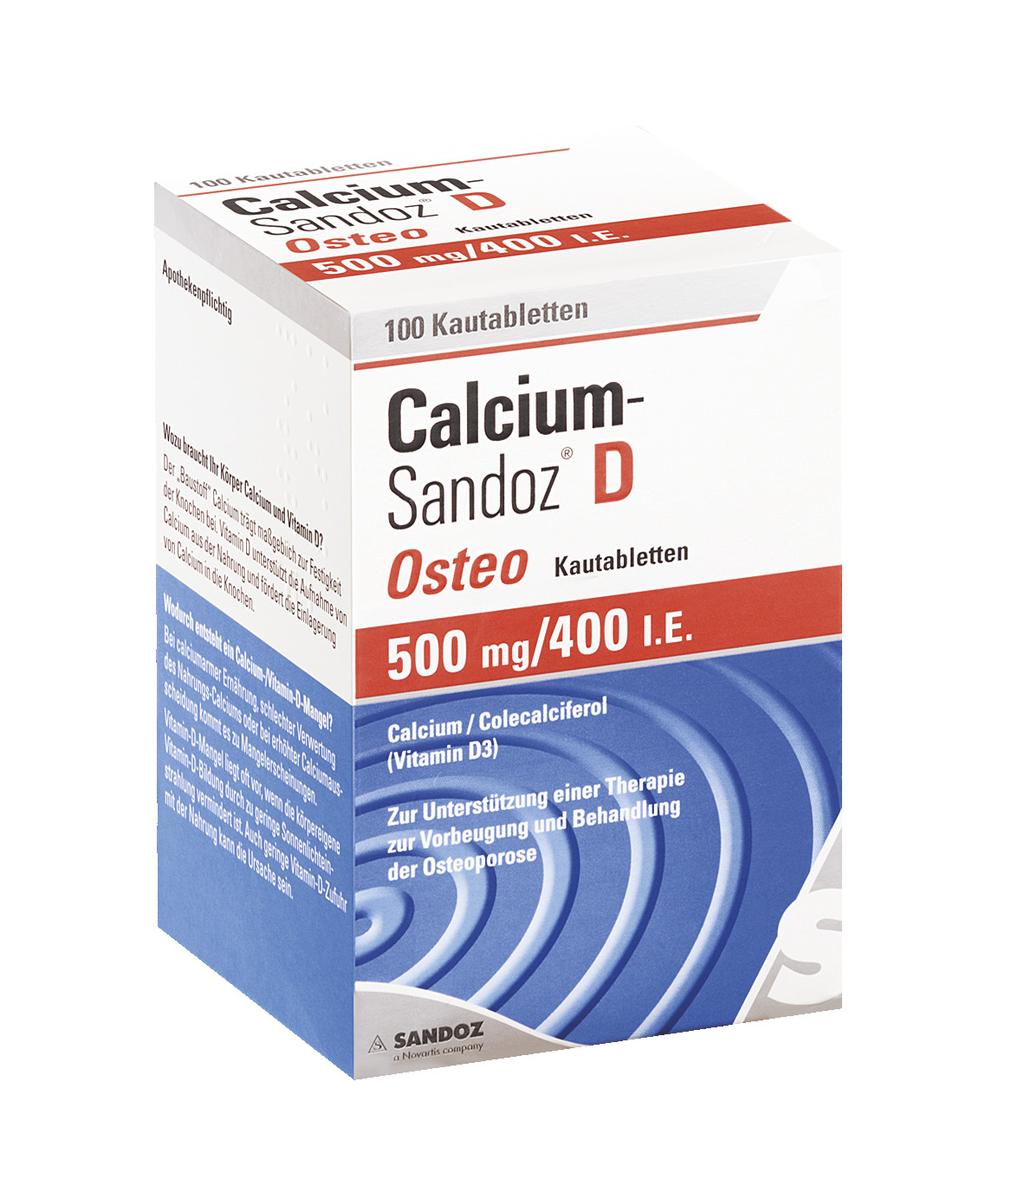 Vitamin-D- und Calciumsupplement zur Unterstützung einer spezifischen Therapie zur Prävention und Behandlung der Osteoporose.